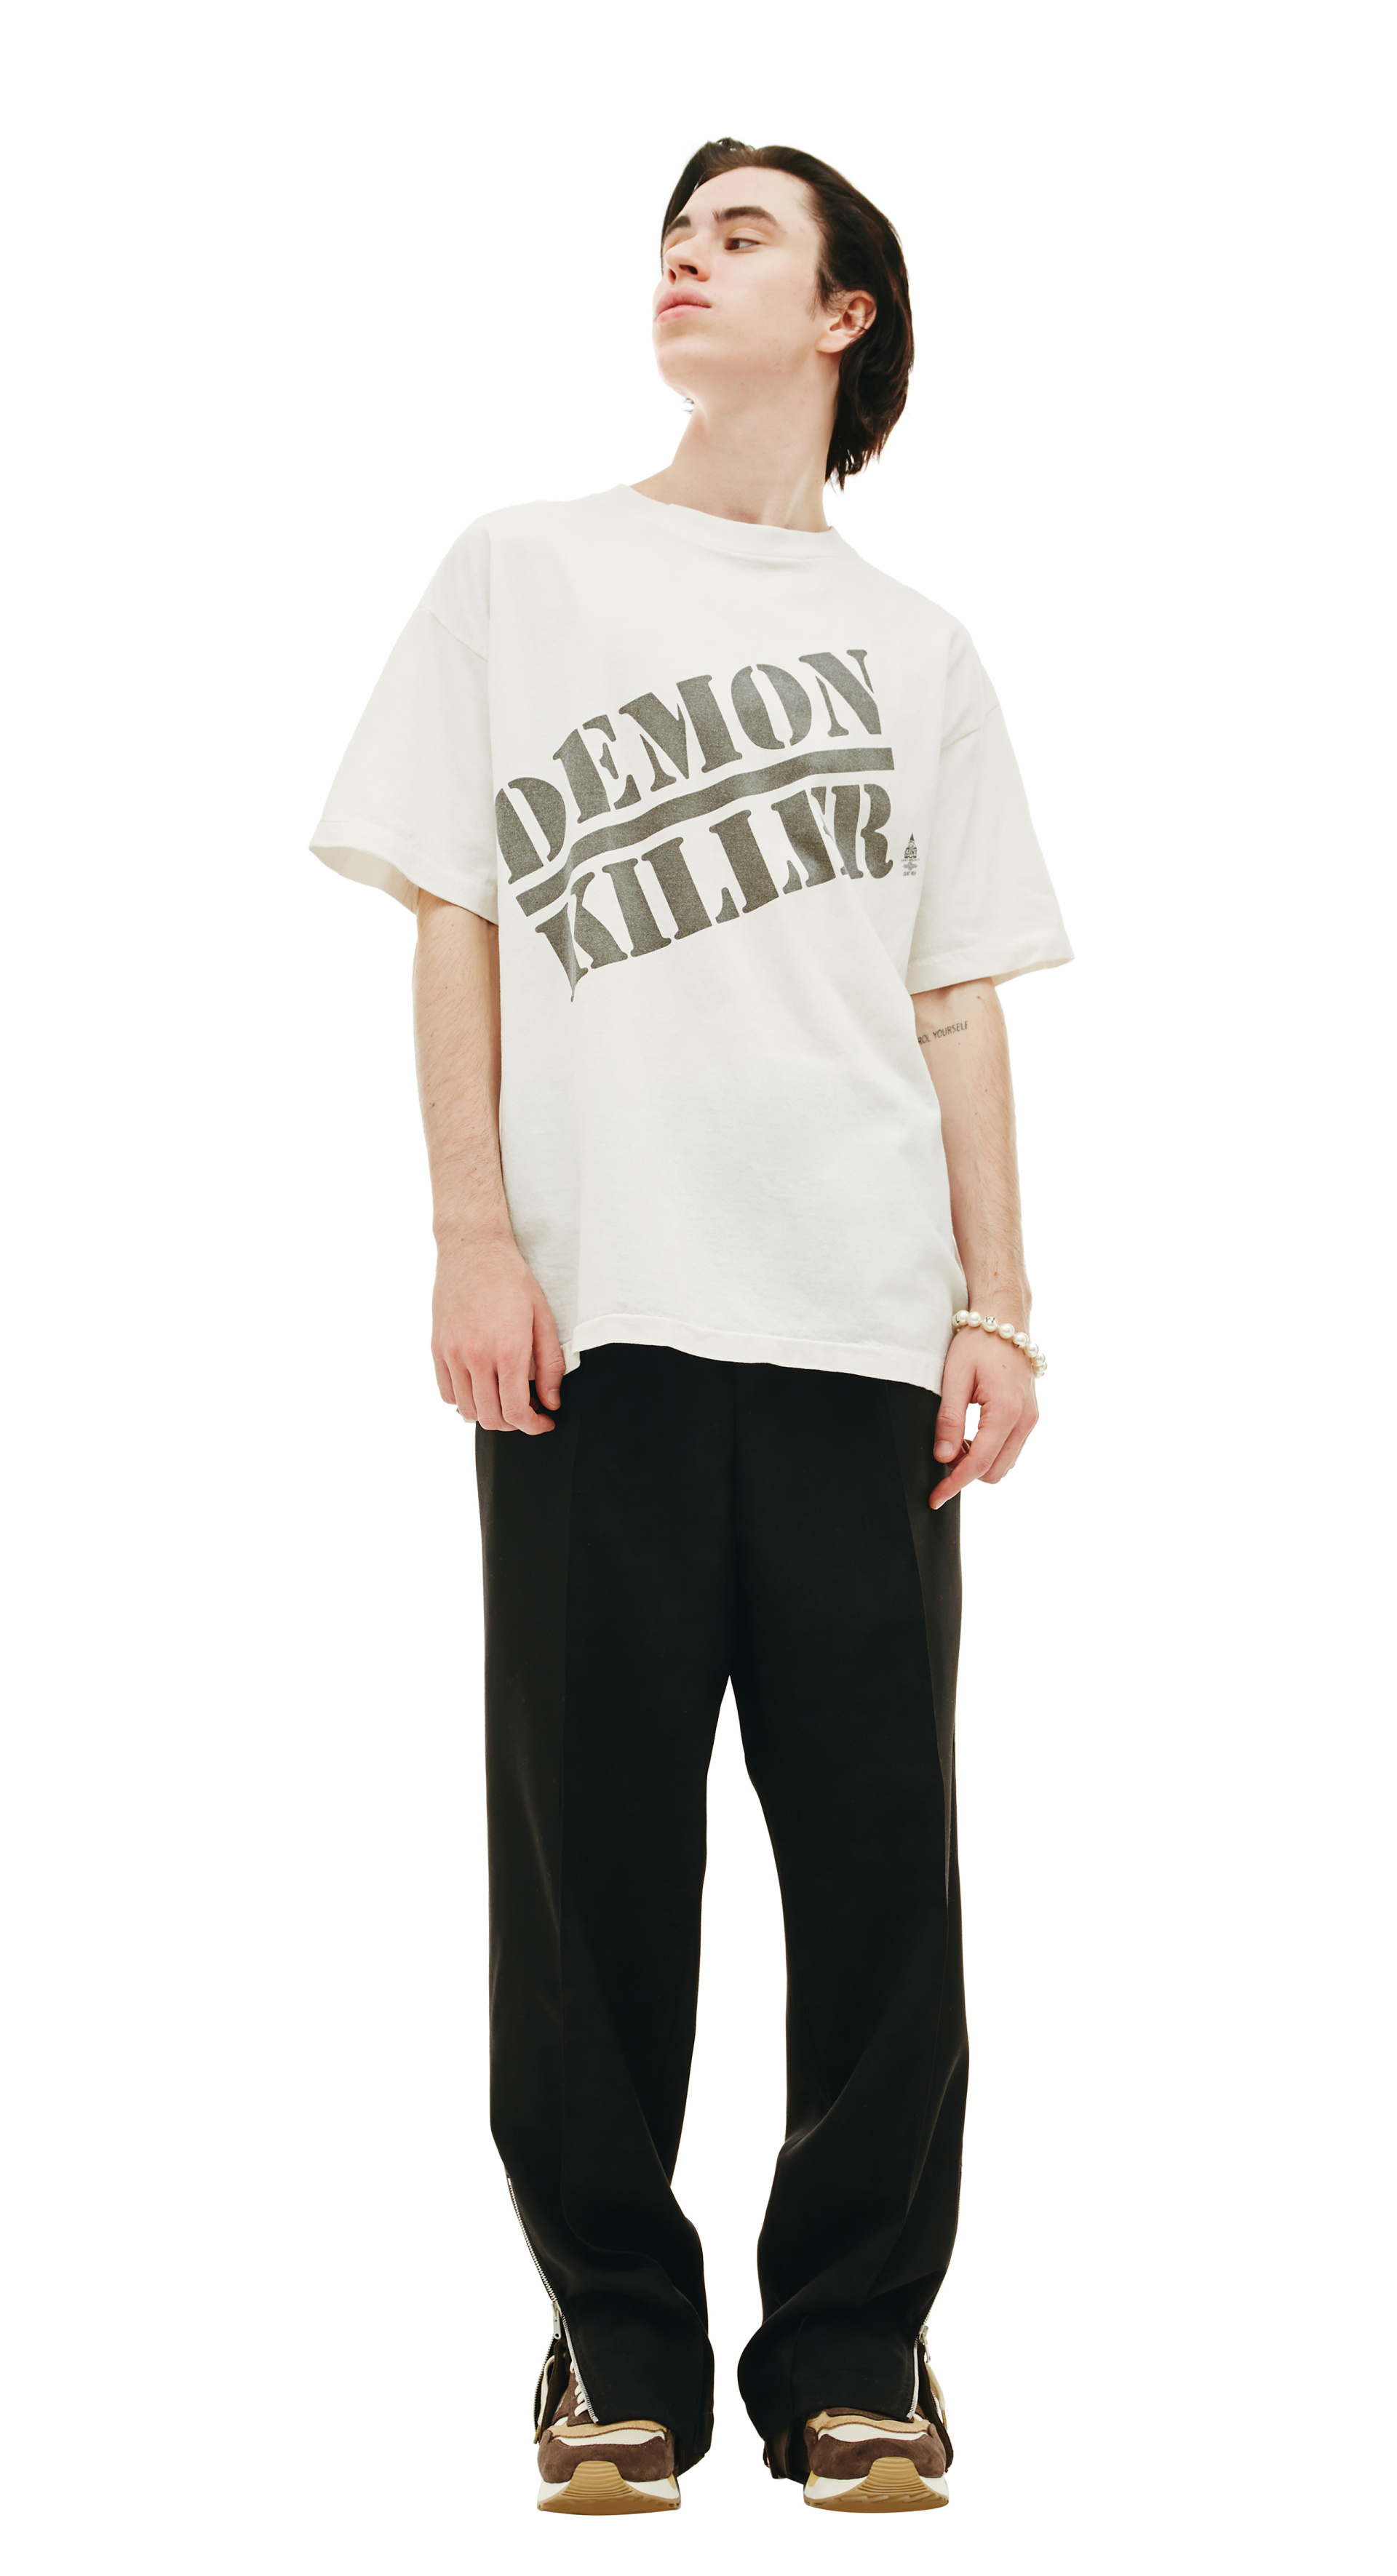 7,990円SAINT MICHAEL Tシャツ XXXL 3XL